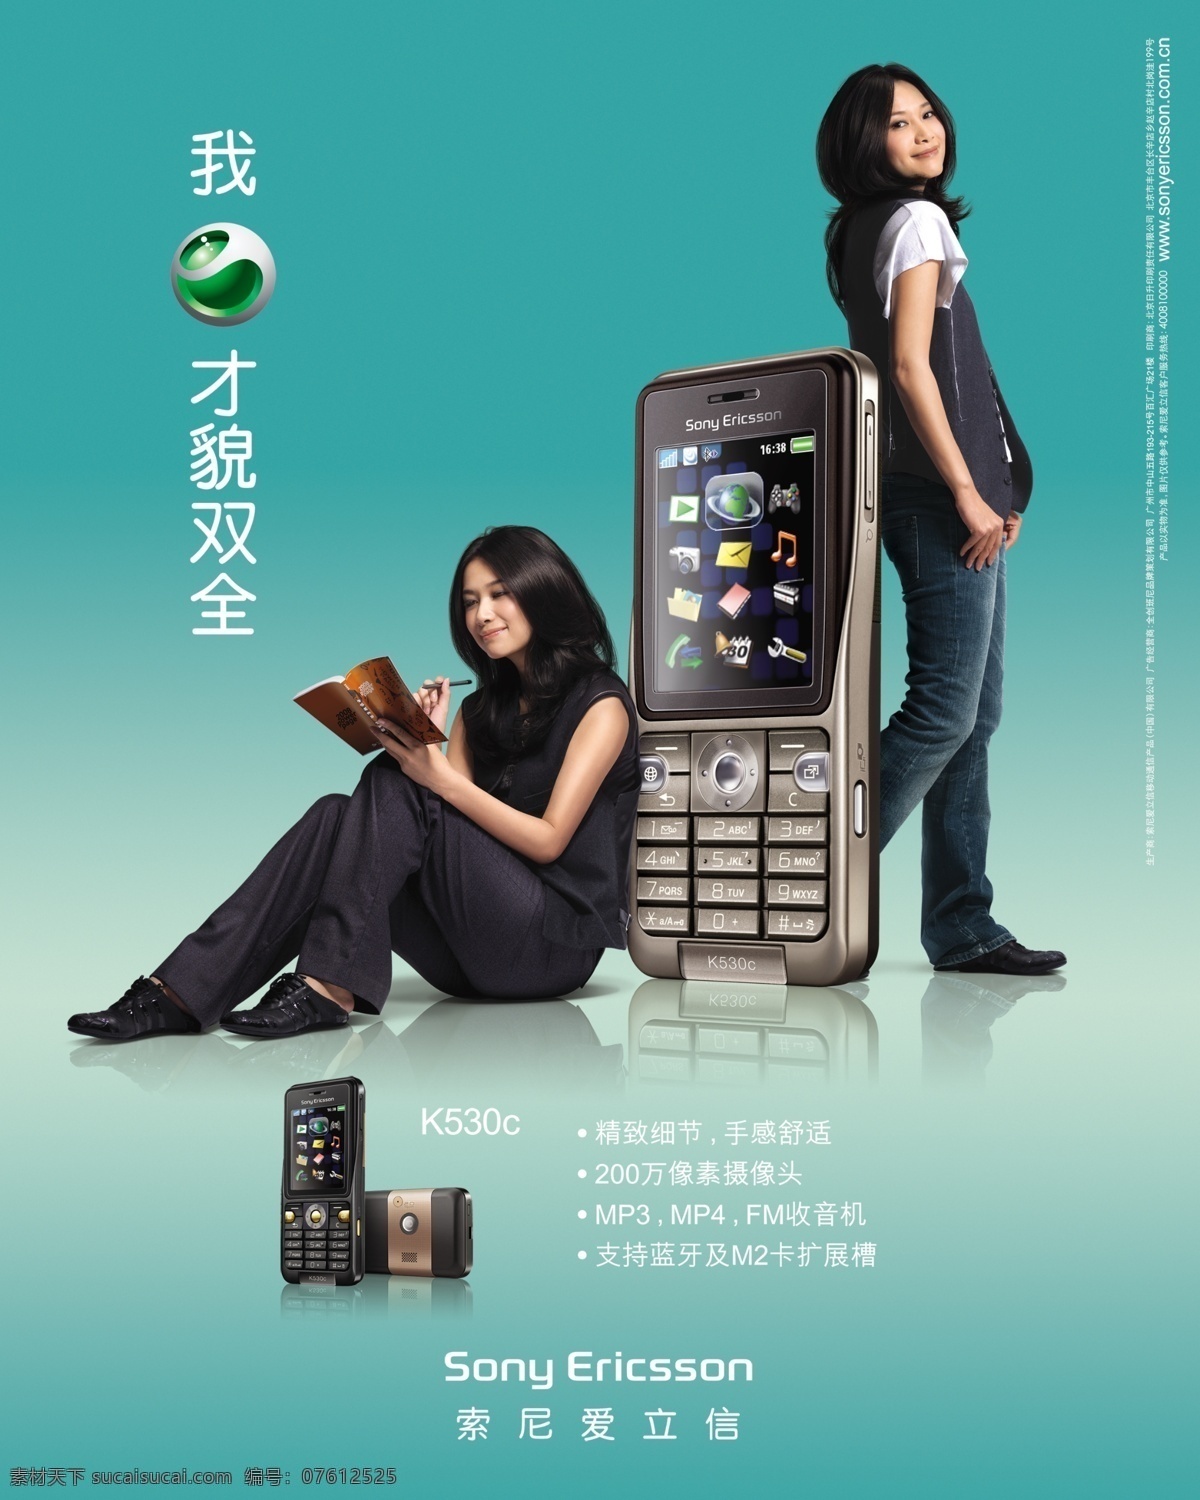 索尼 爱立信 k530c 广告 海报 psd素材 分层素材 广告海报 韩国美女 蓝色背景 索尼爱立信 图标 宣传海报 音乐手机 手机 拍照手机 设计效果 psd源文件